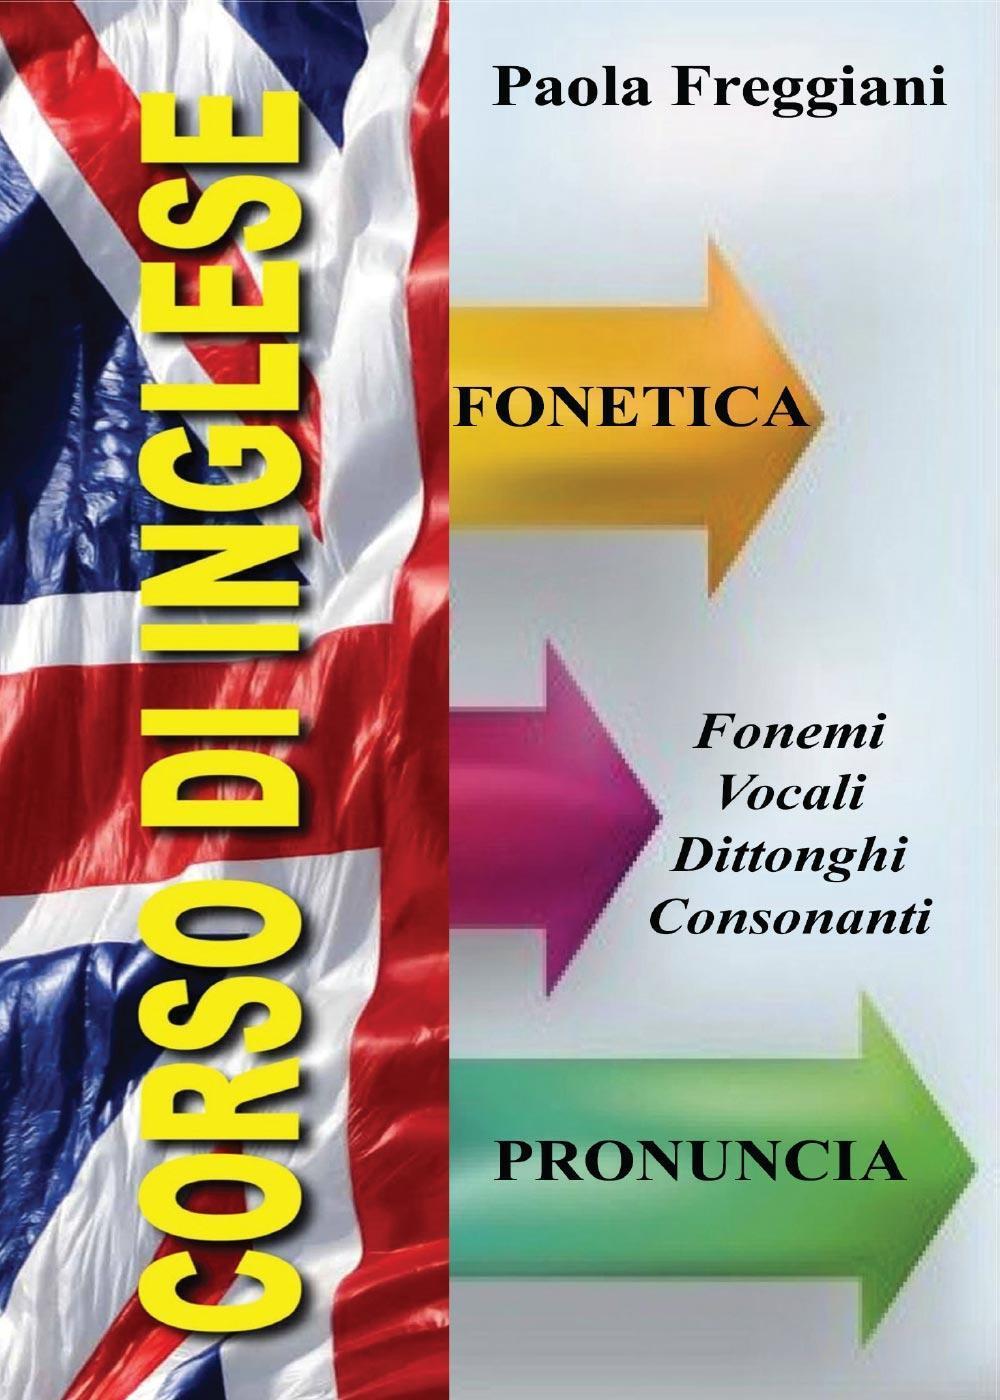 Corso di Inglese: Fonetica e Pronuncia